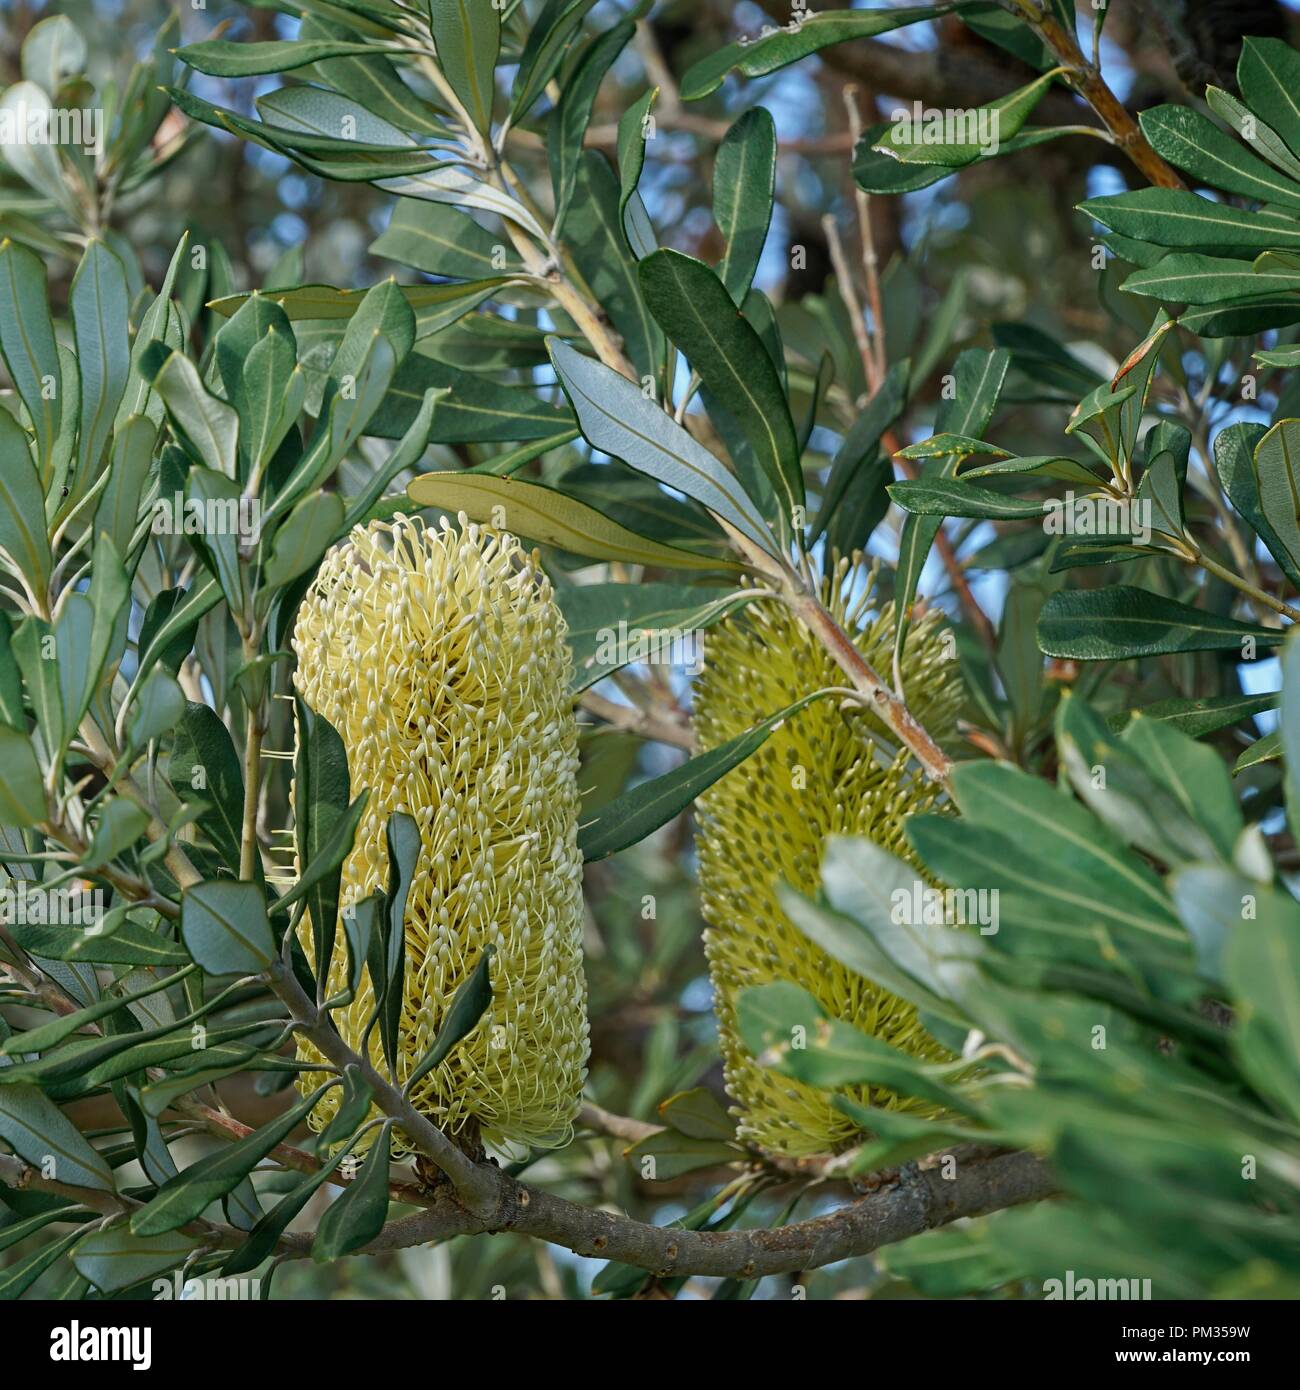 Banksia fiori, nativo di una pianta australiana. Foto Stock